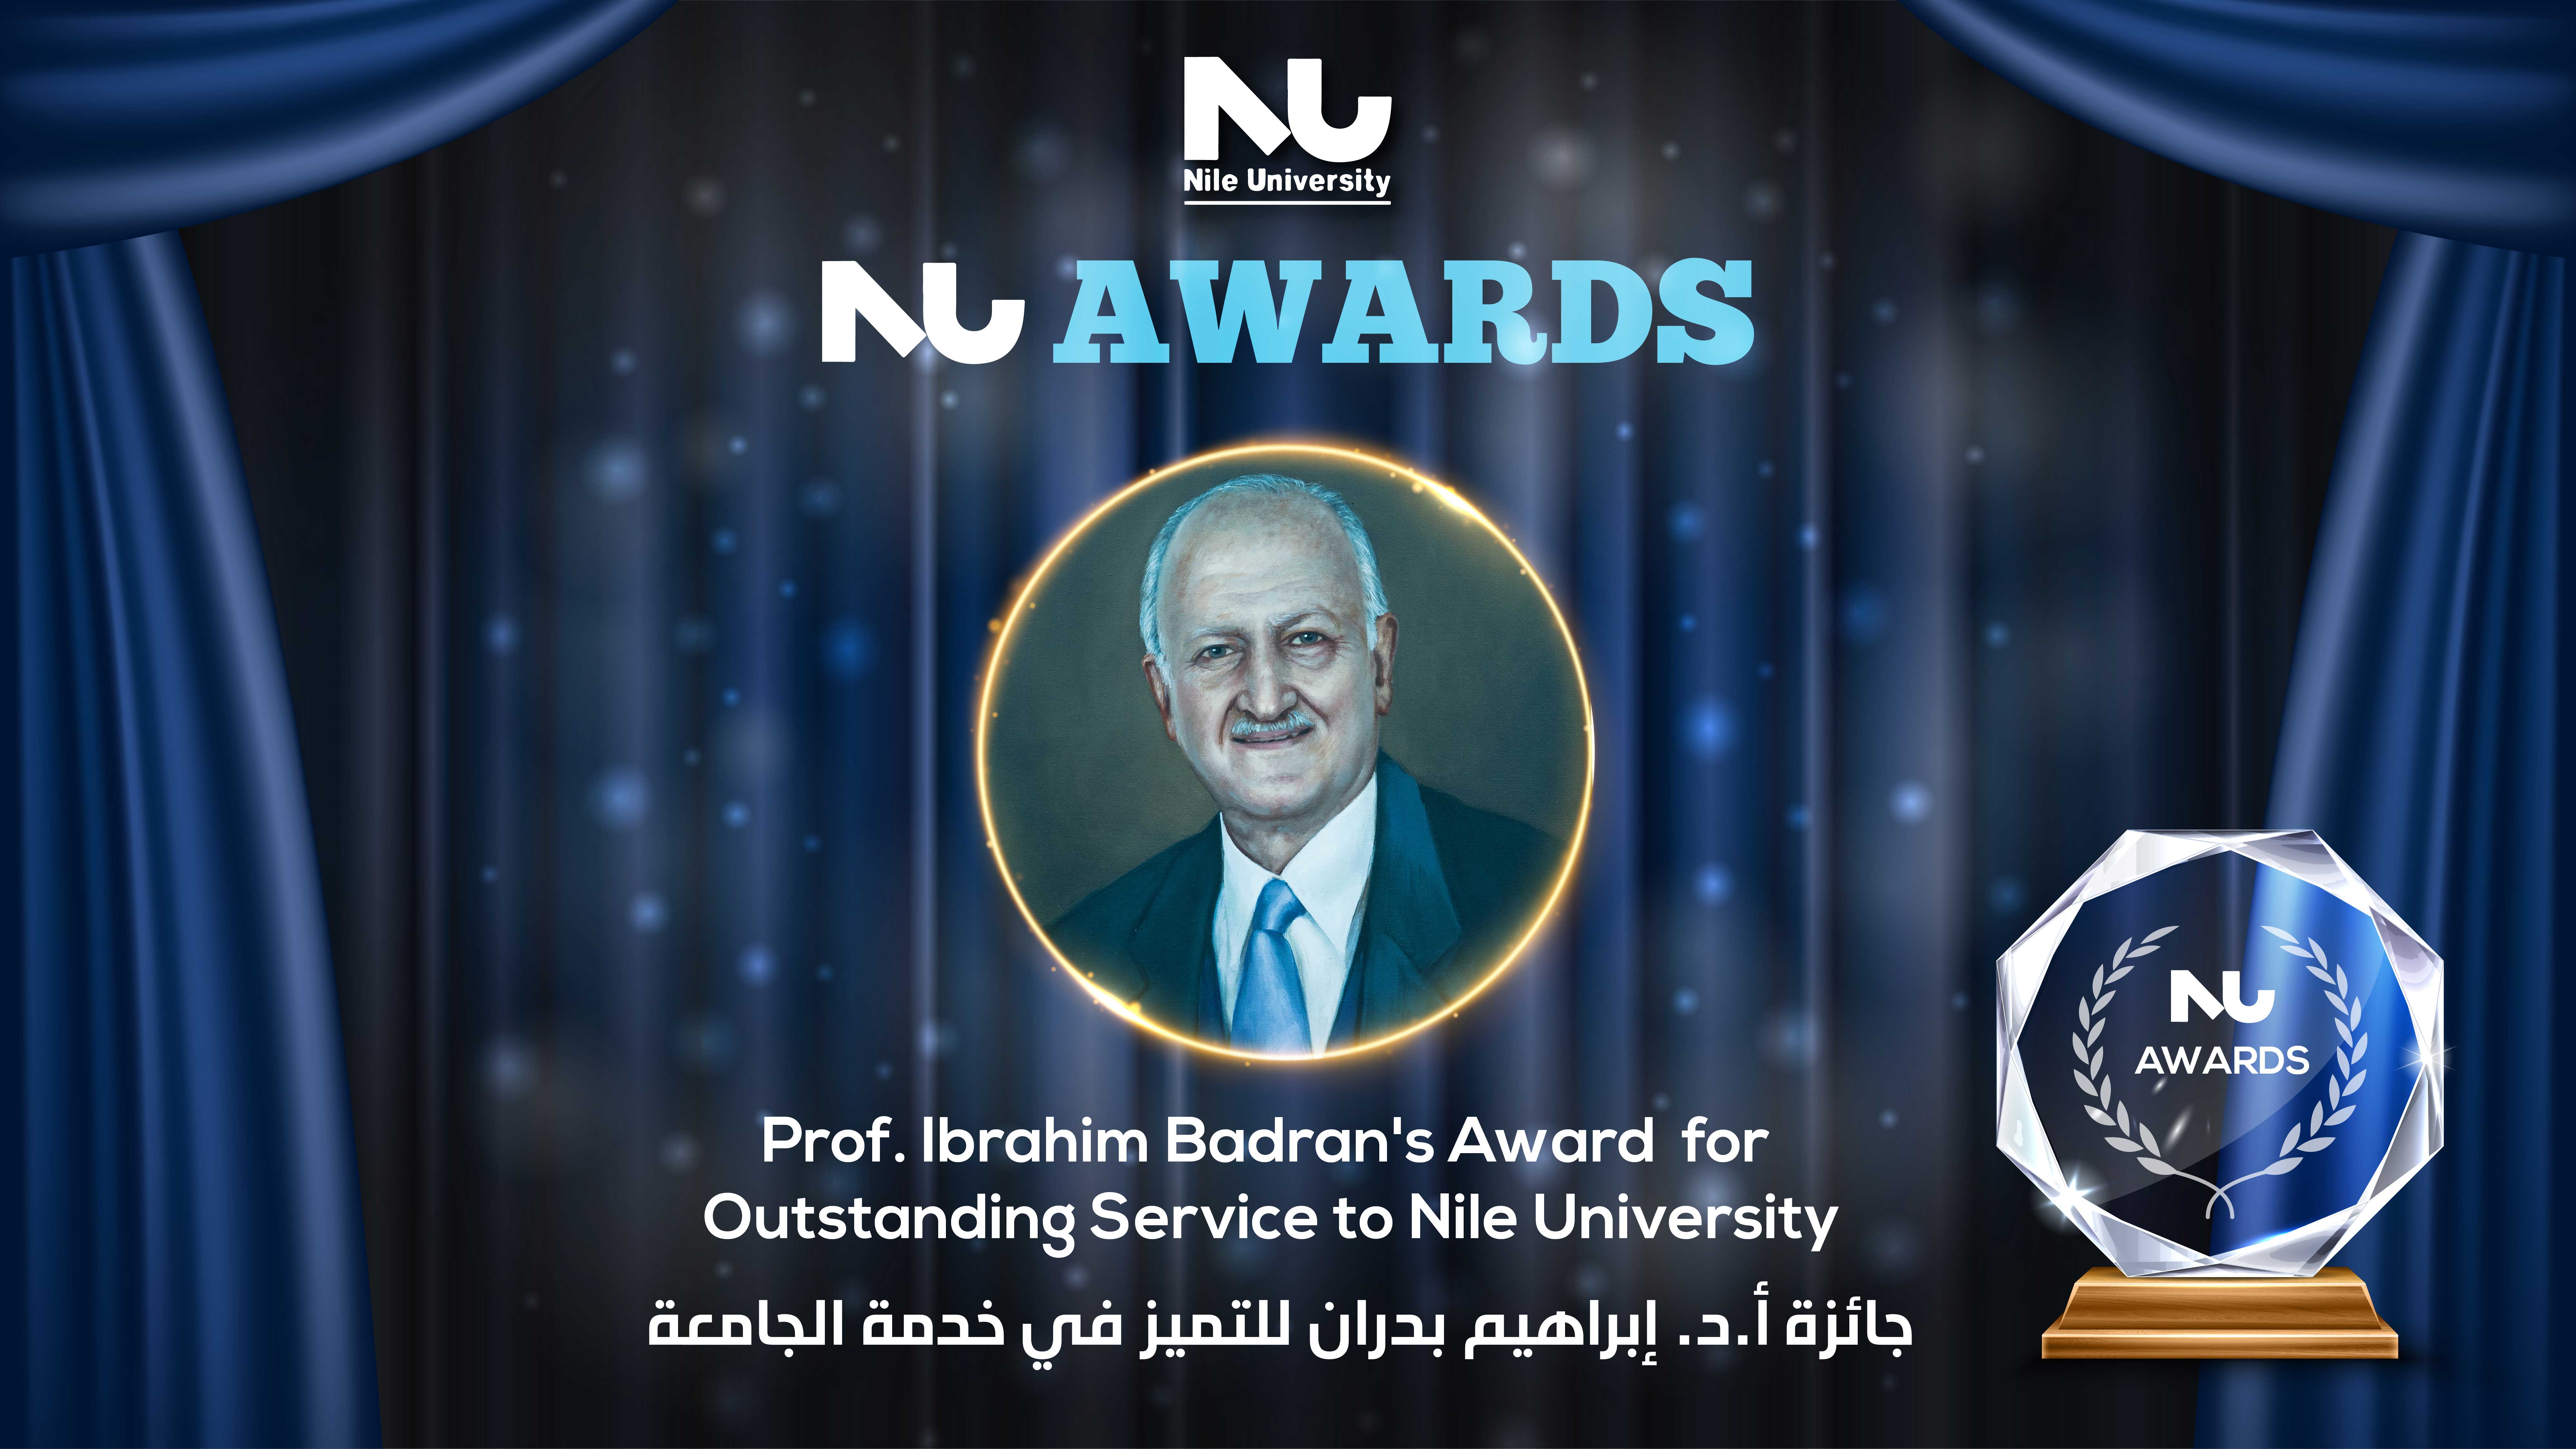 Prof. Ibrahim Badran